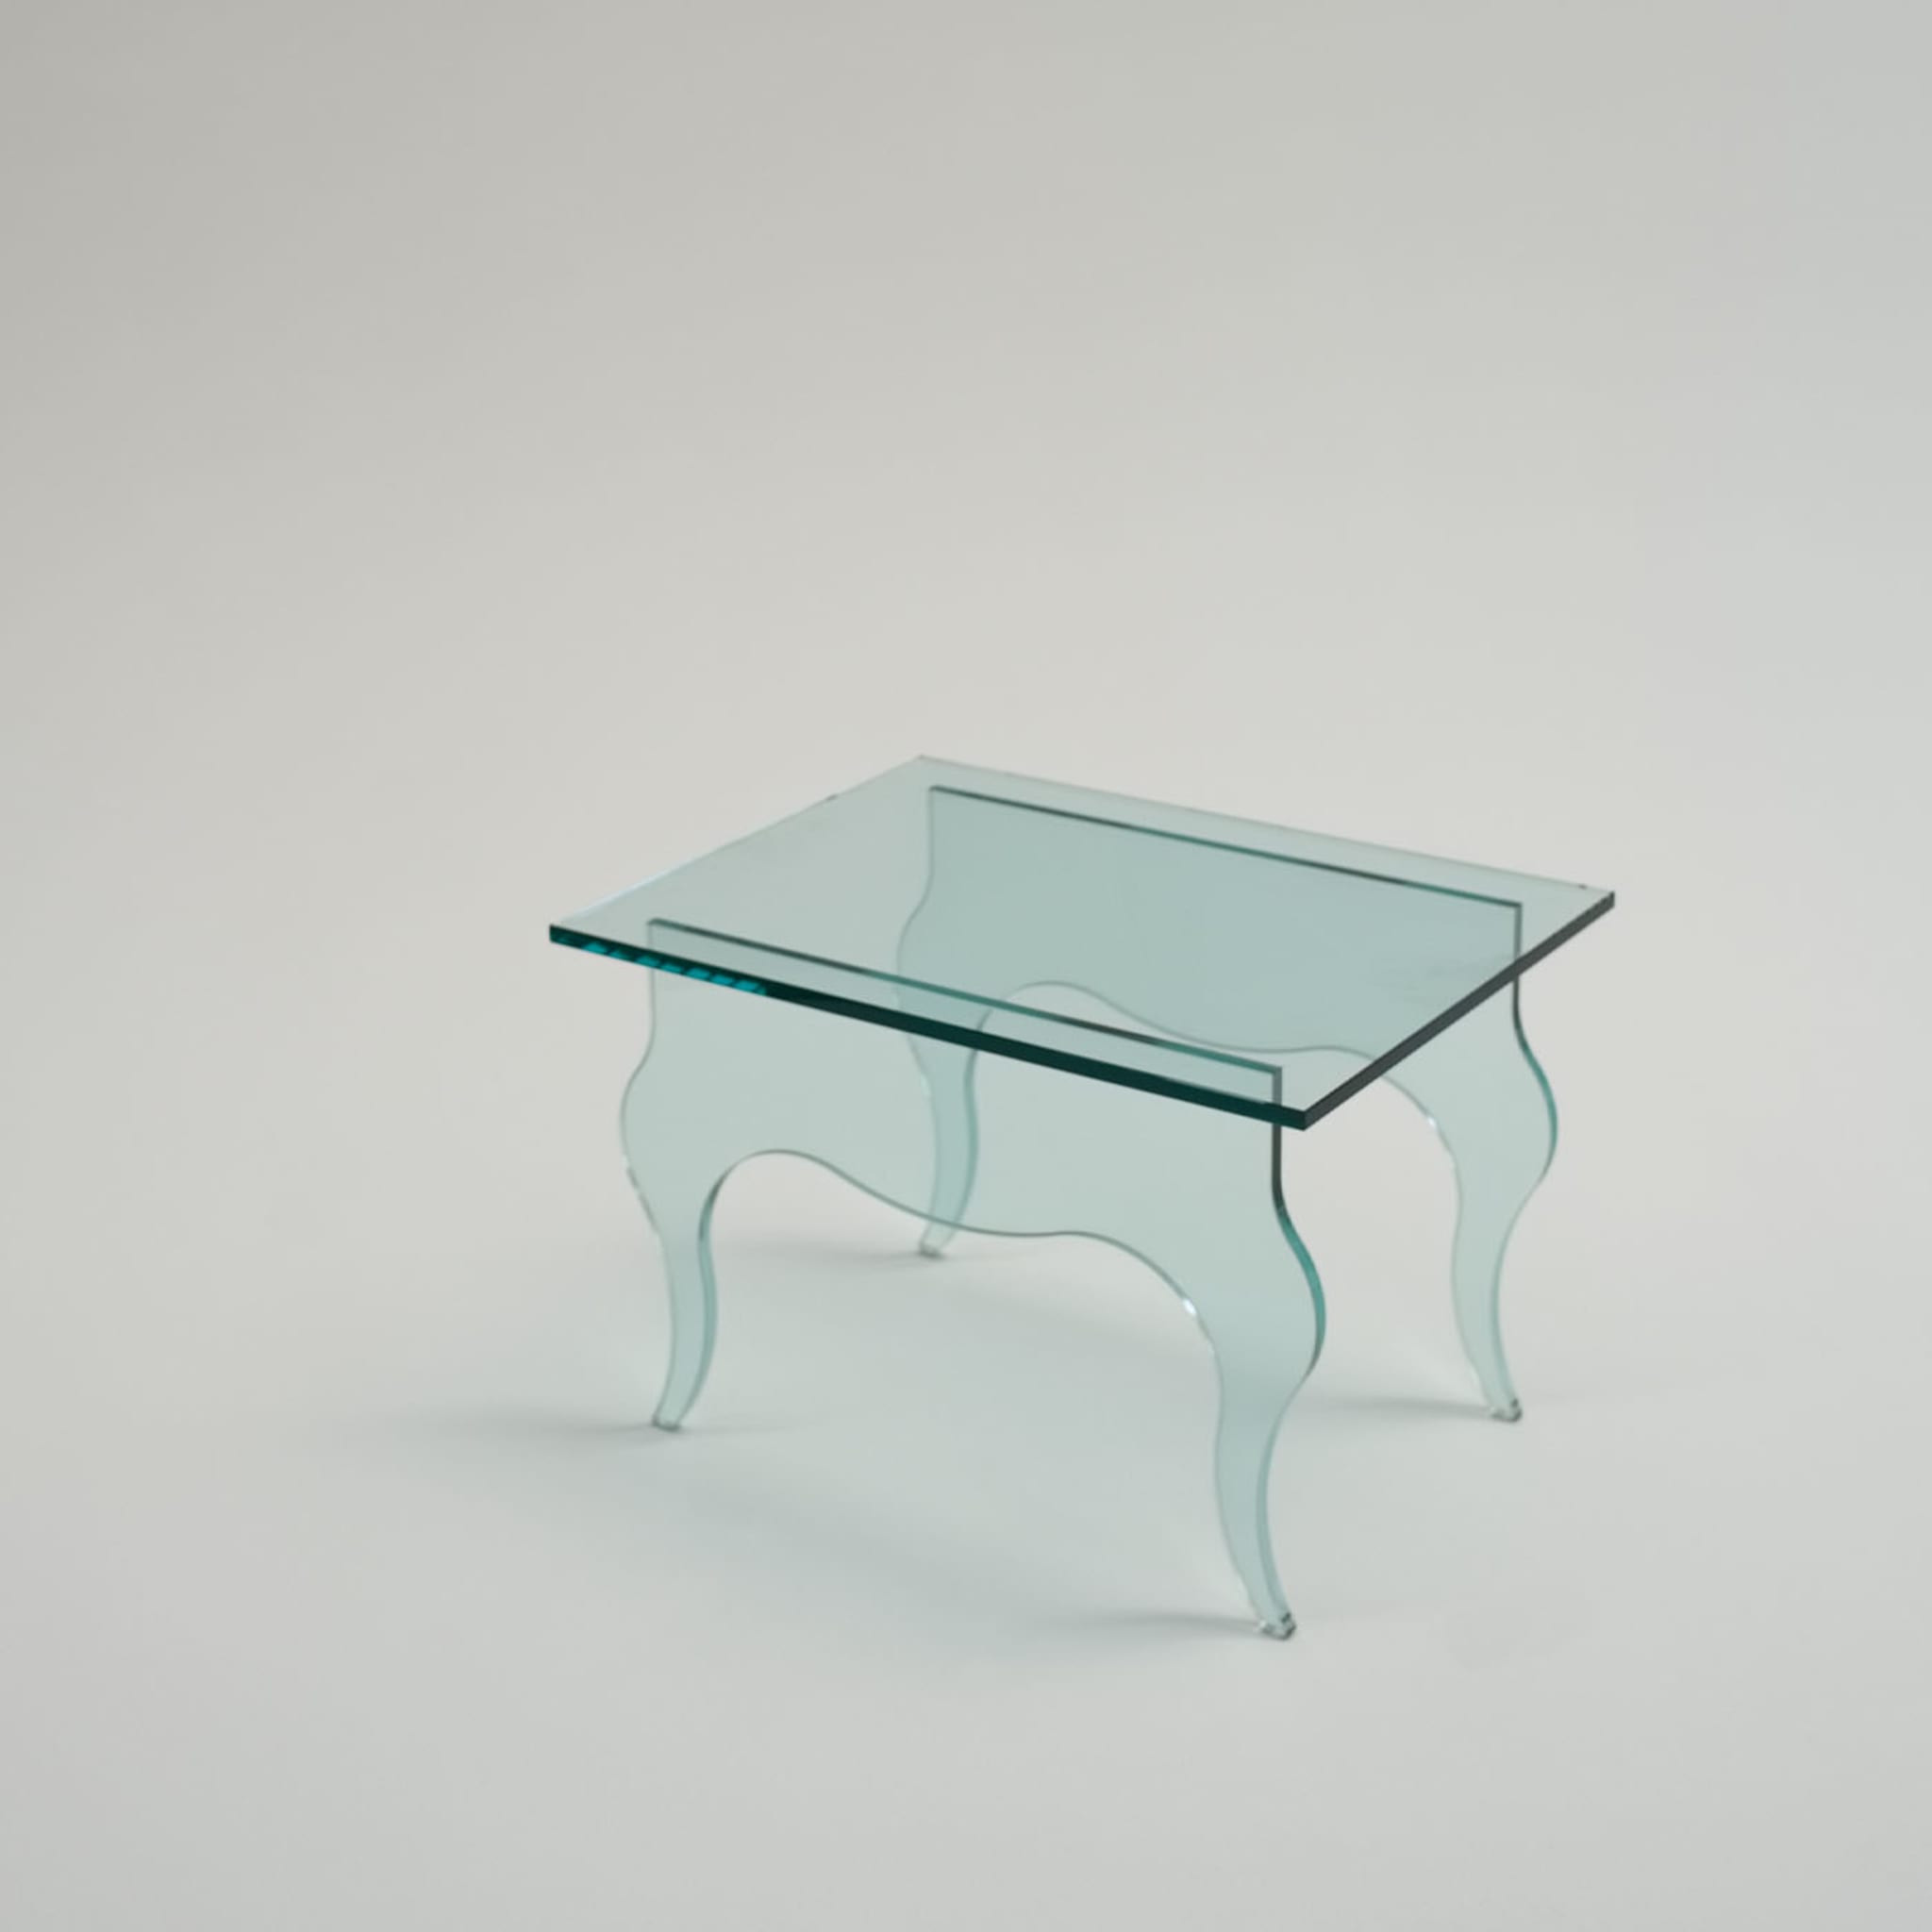 Edmondo Side Table by Andrea Petterini - Alternative view 2